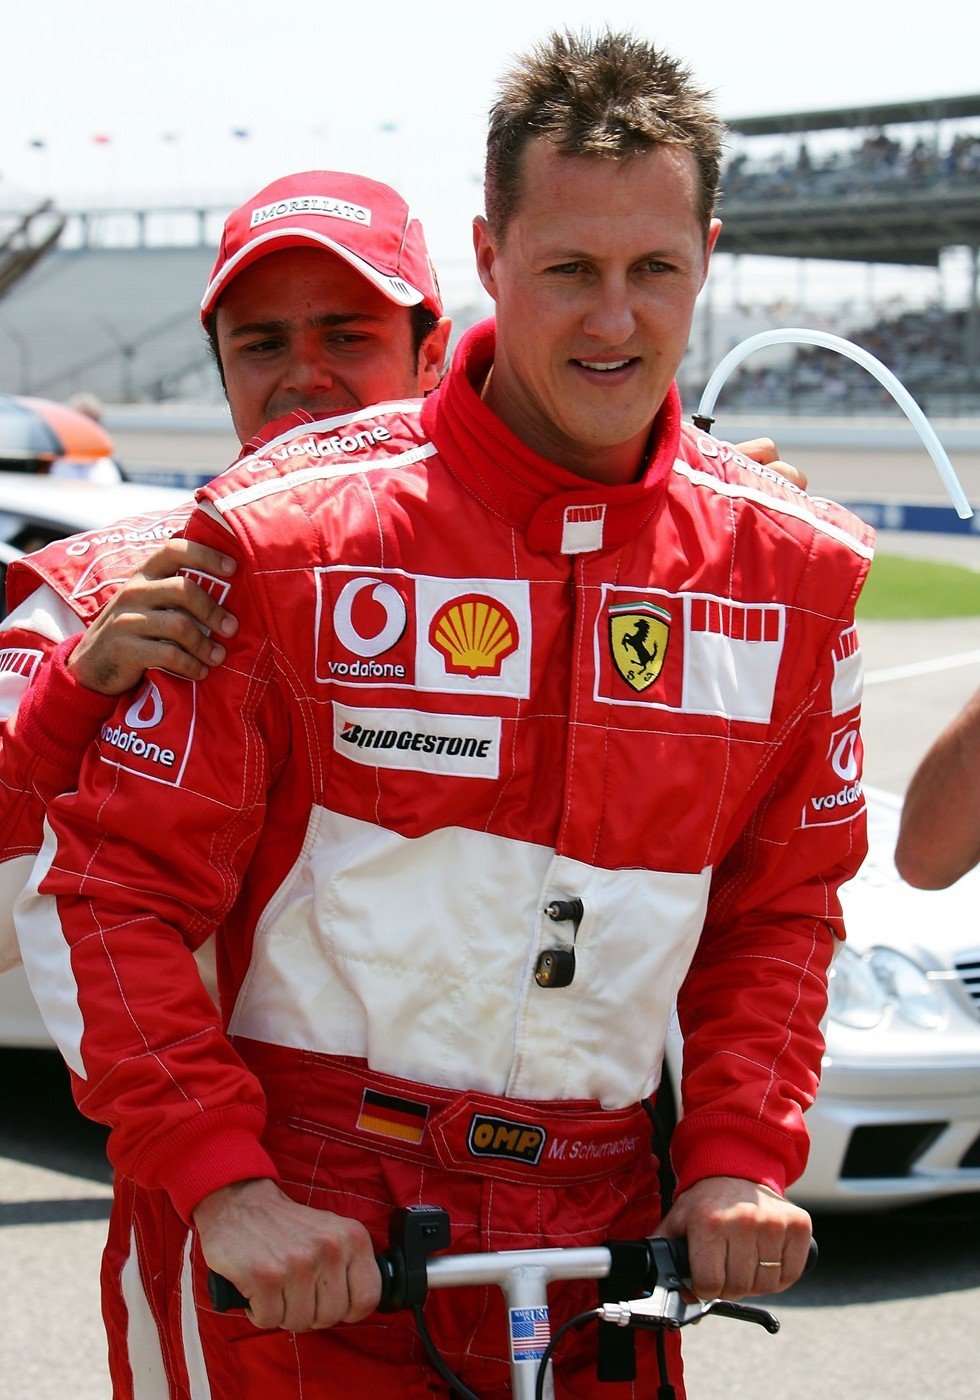 Skutečný stav Michaela Schumachera se někteří lidé snaží zjistit na vlastní pěst